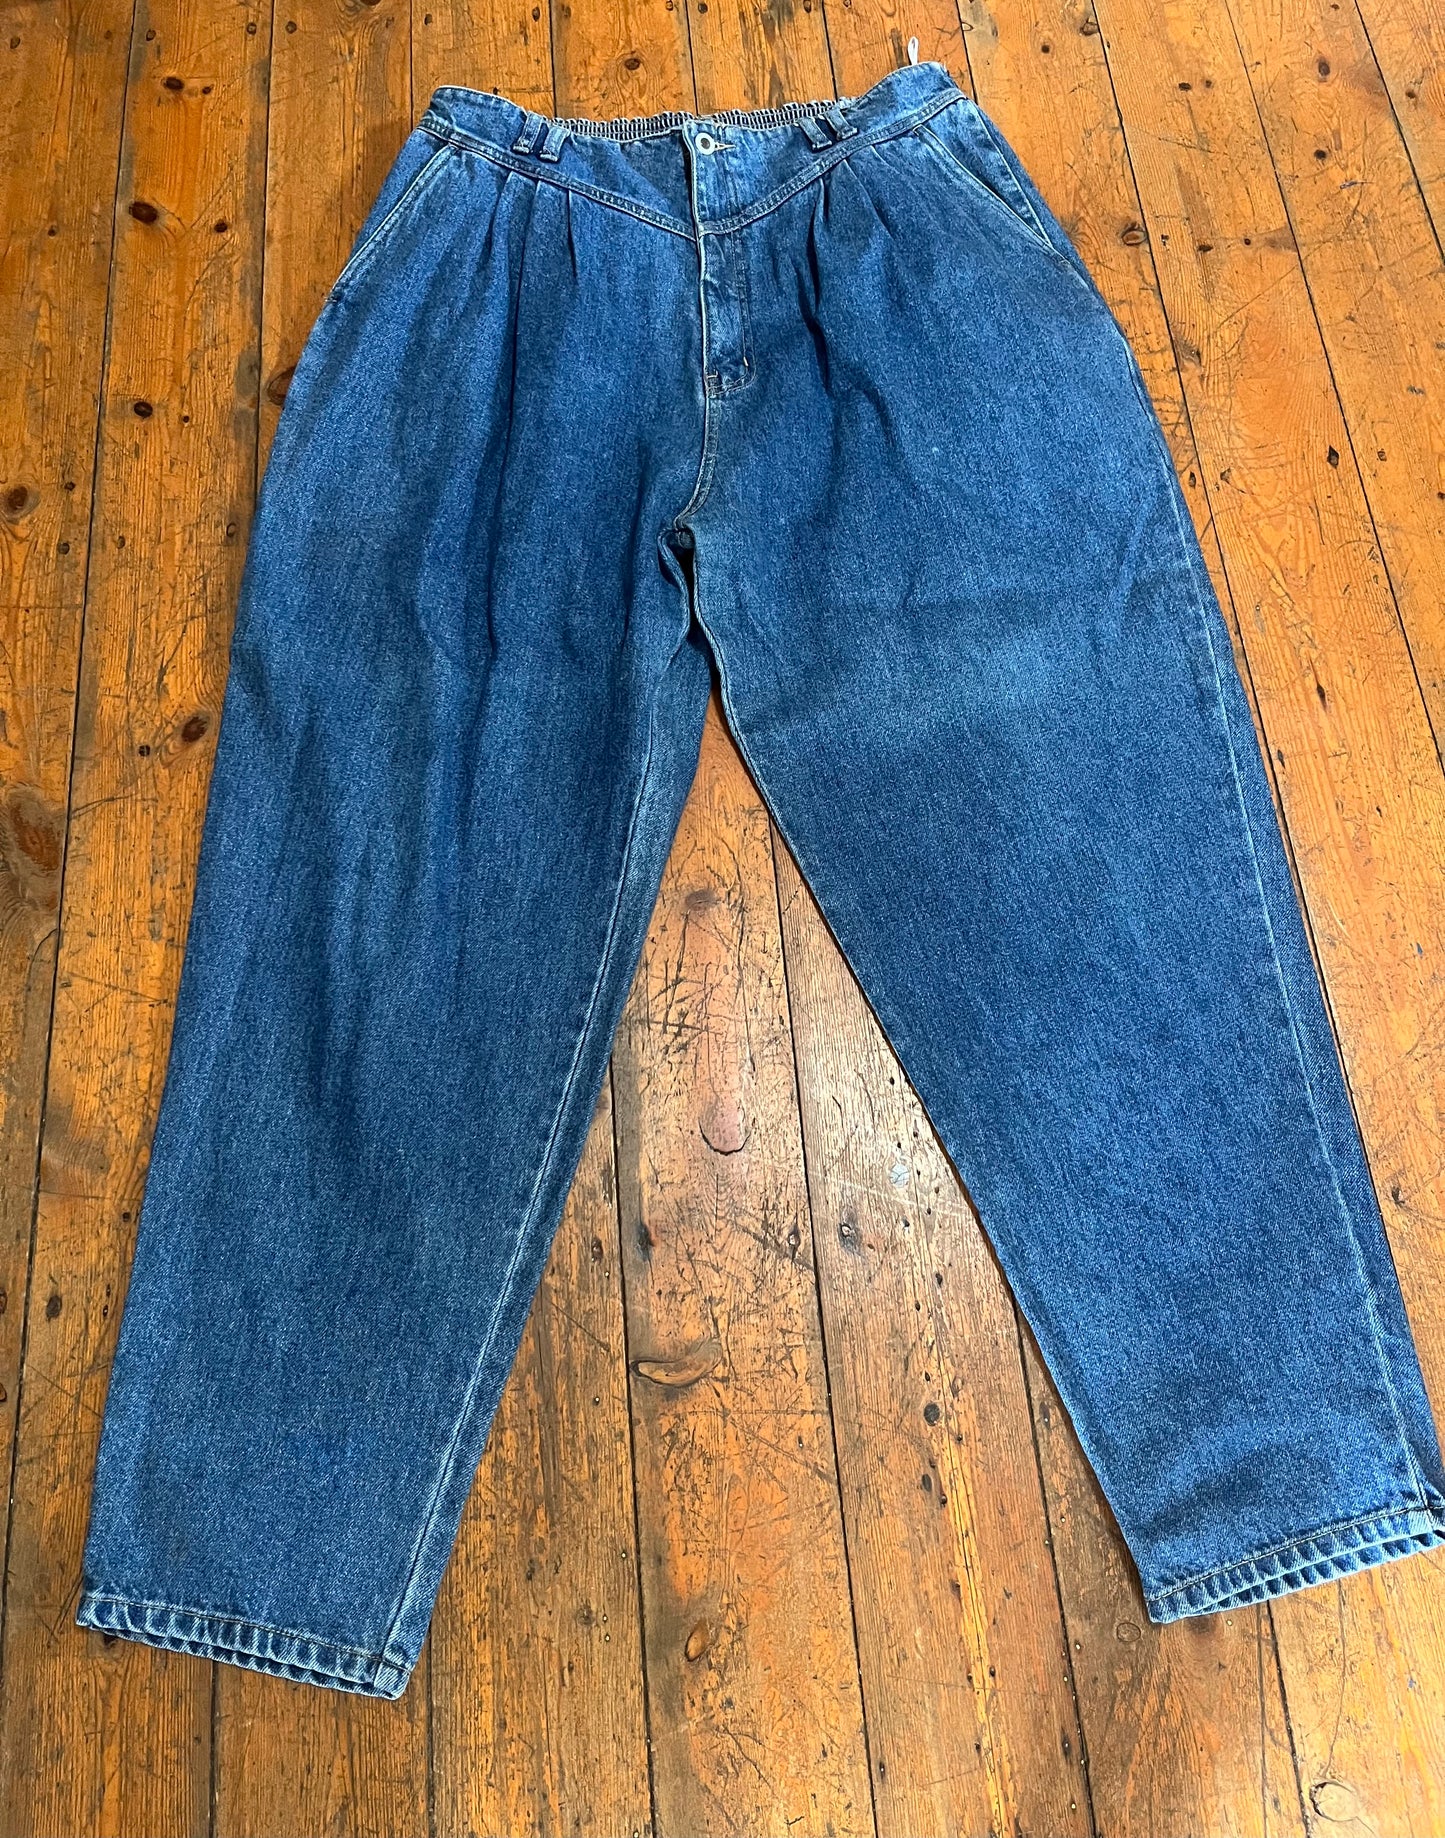 Retro 90s Highwaist Denim Jeans